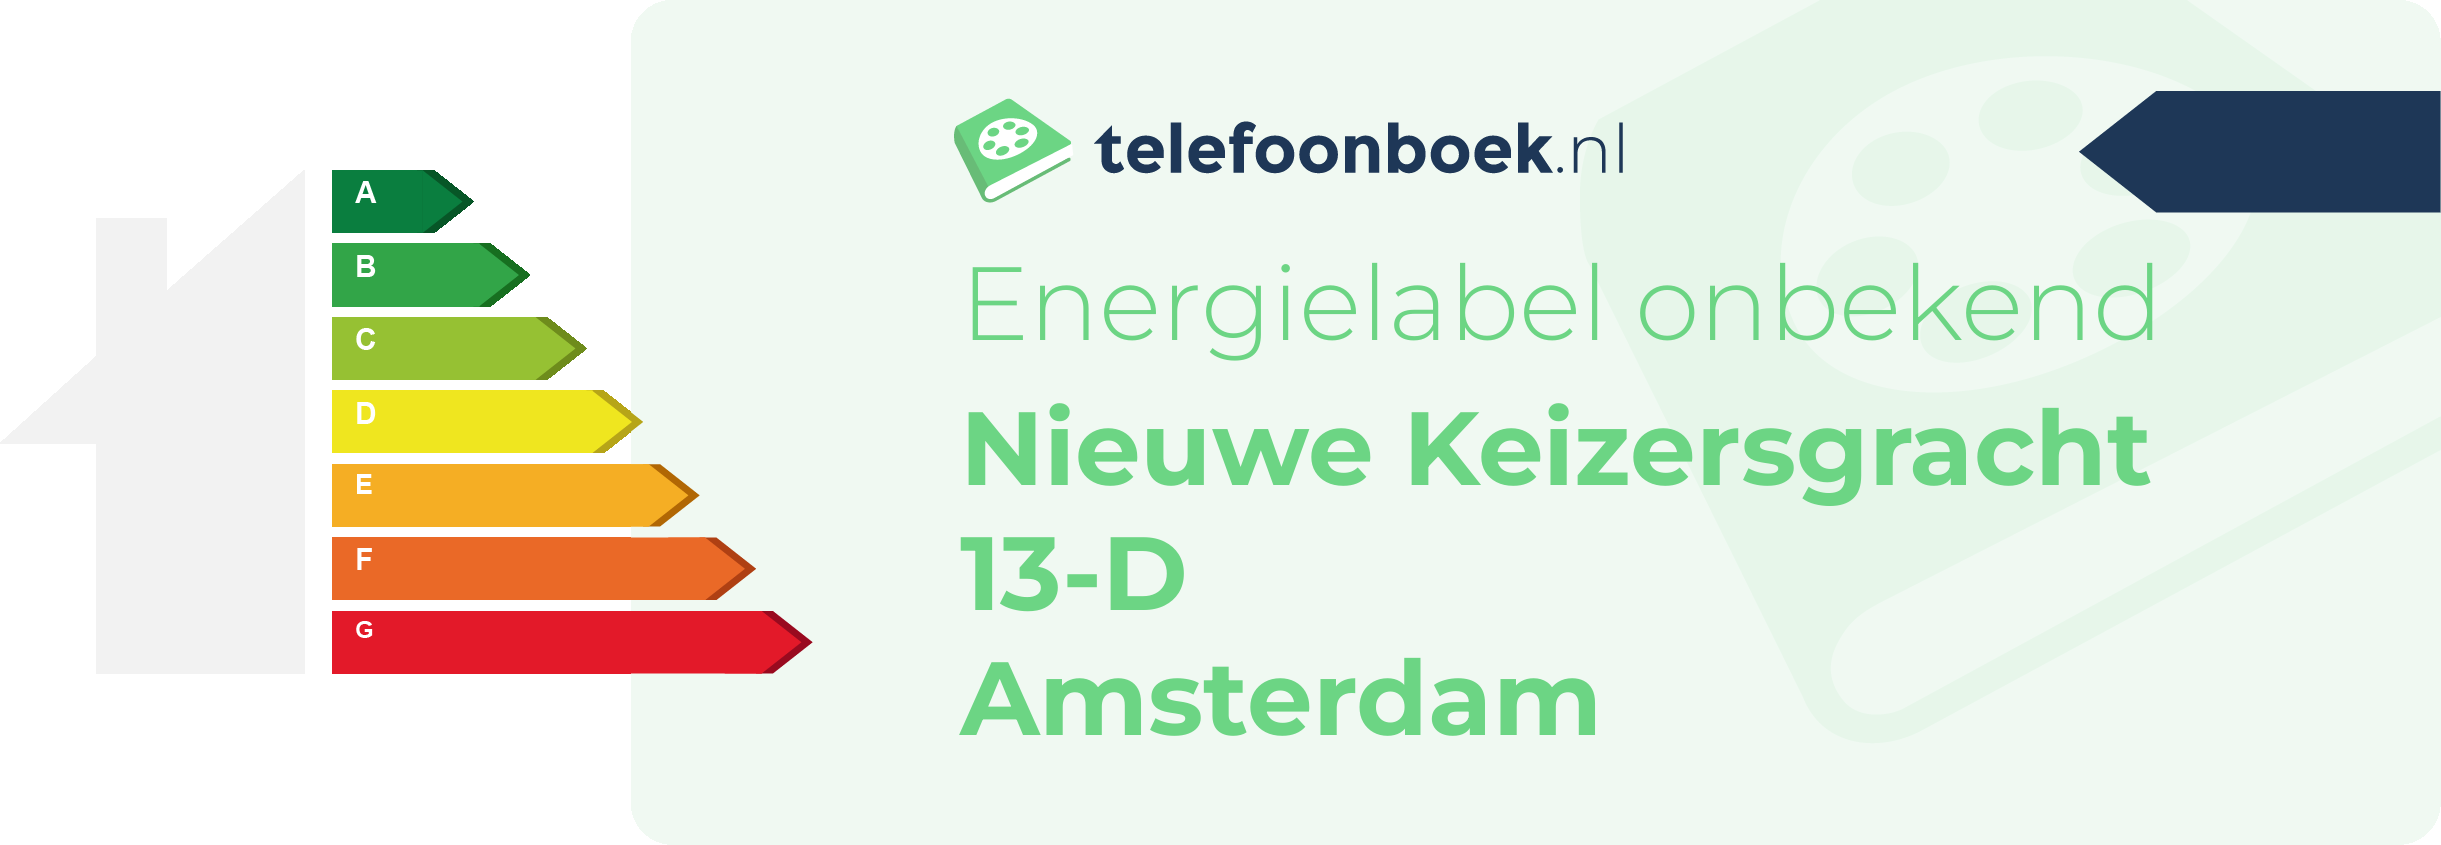 Energielabel Nieuwe Keizersgracht 13-D Amsterdam